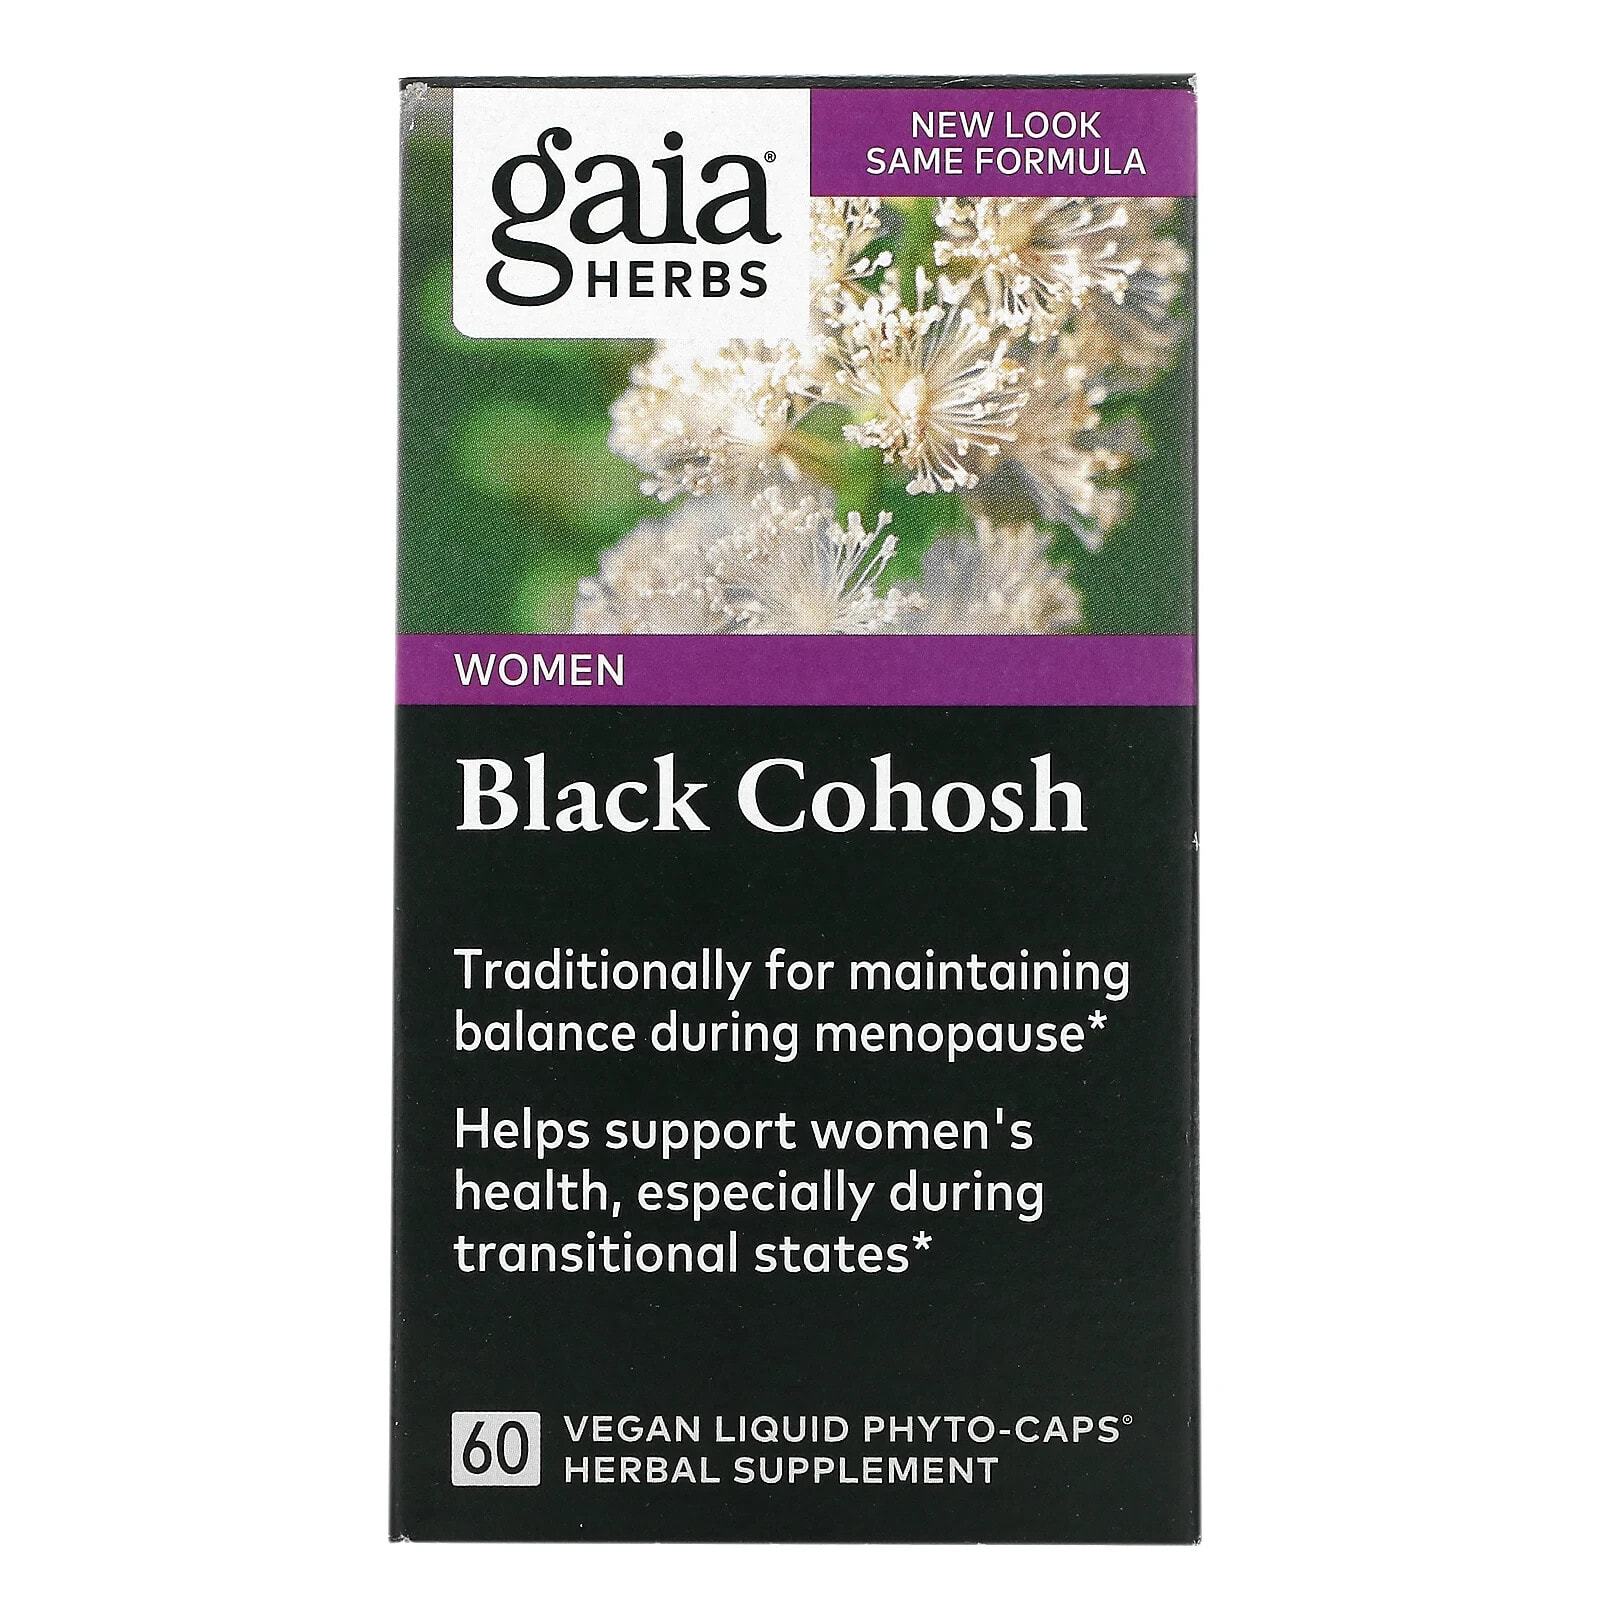 Women, Black Cohosh, 60 Vegan Liquid Phyto-Caps